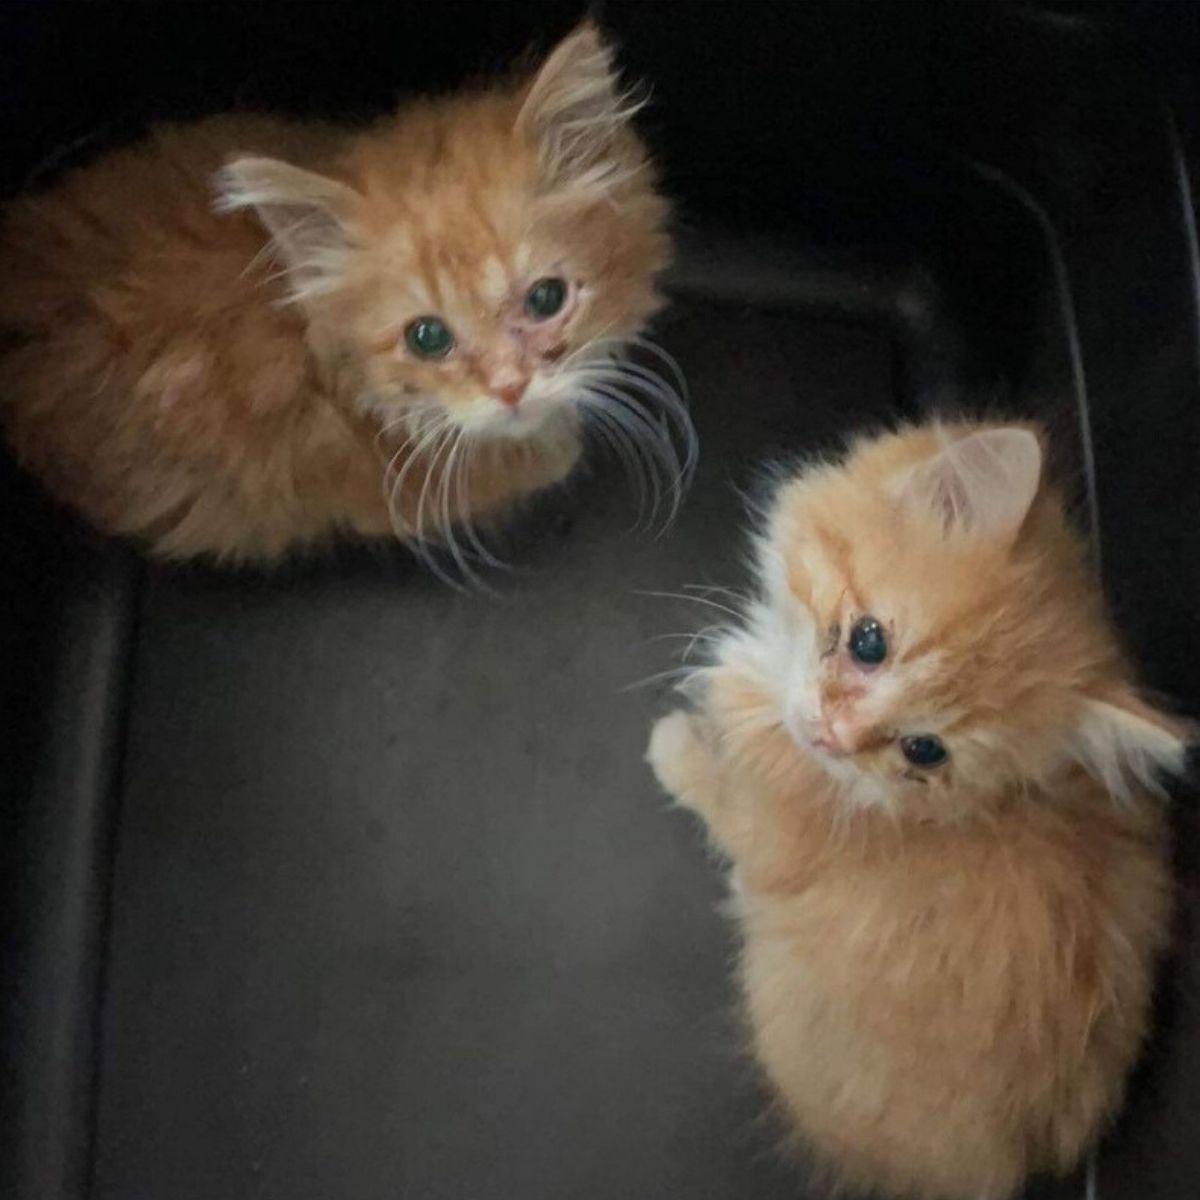 adorable ginger kittens